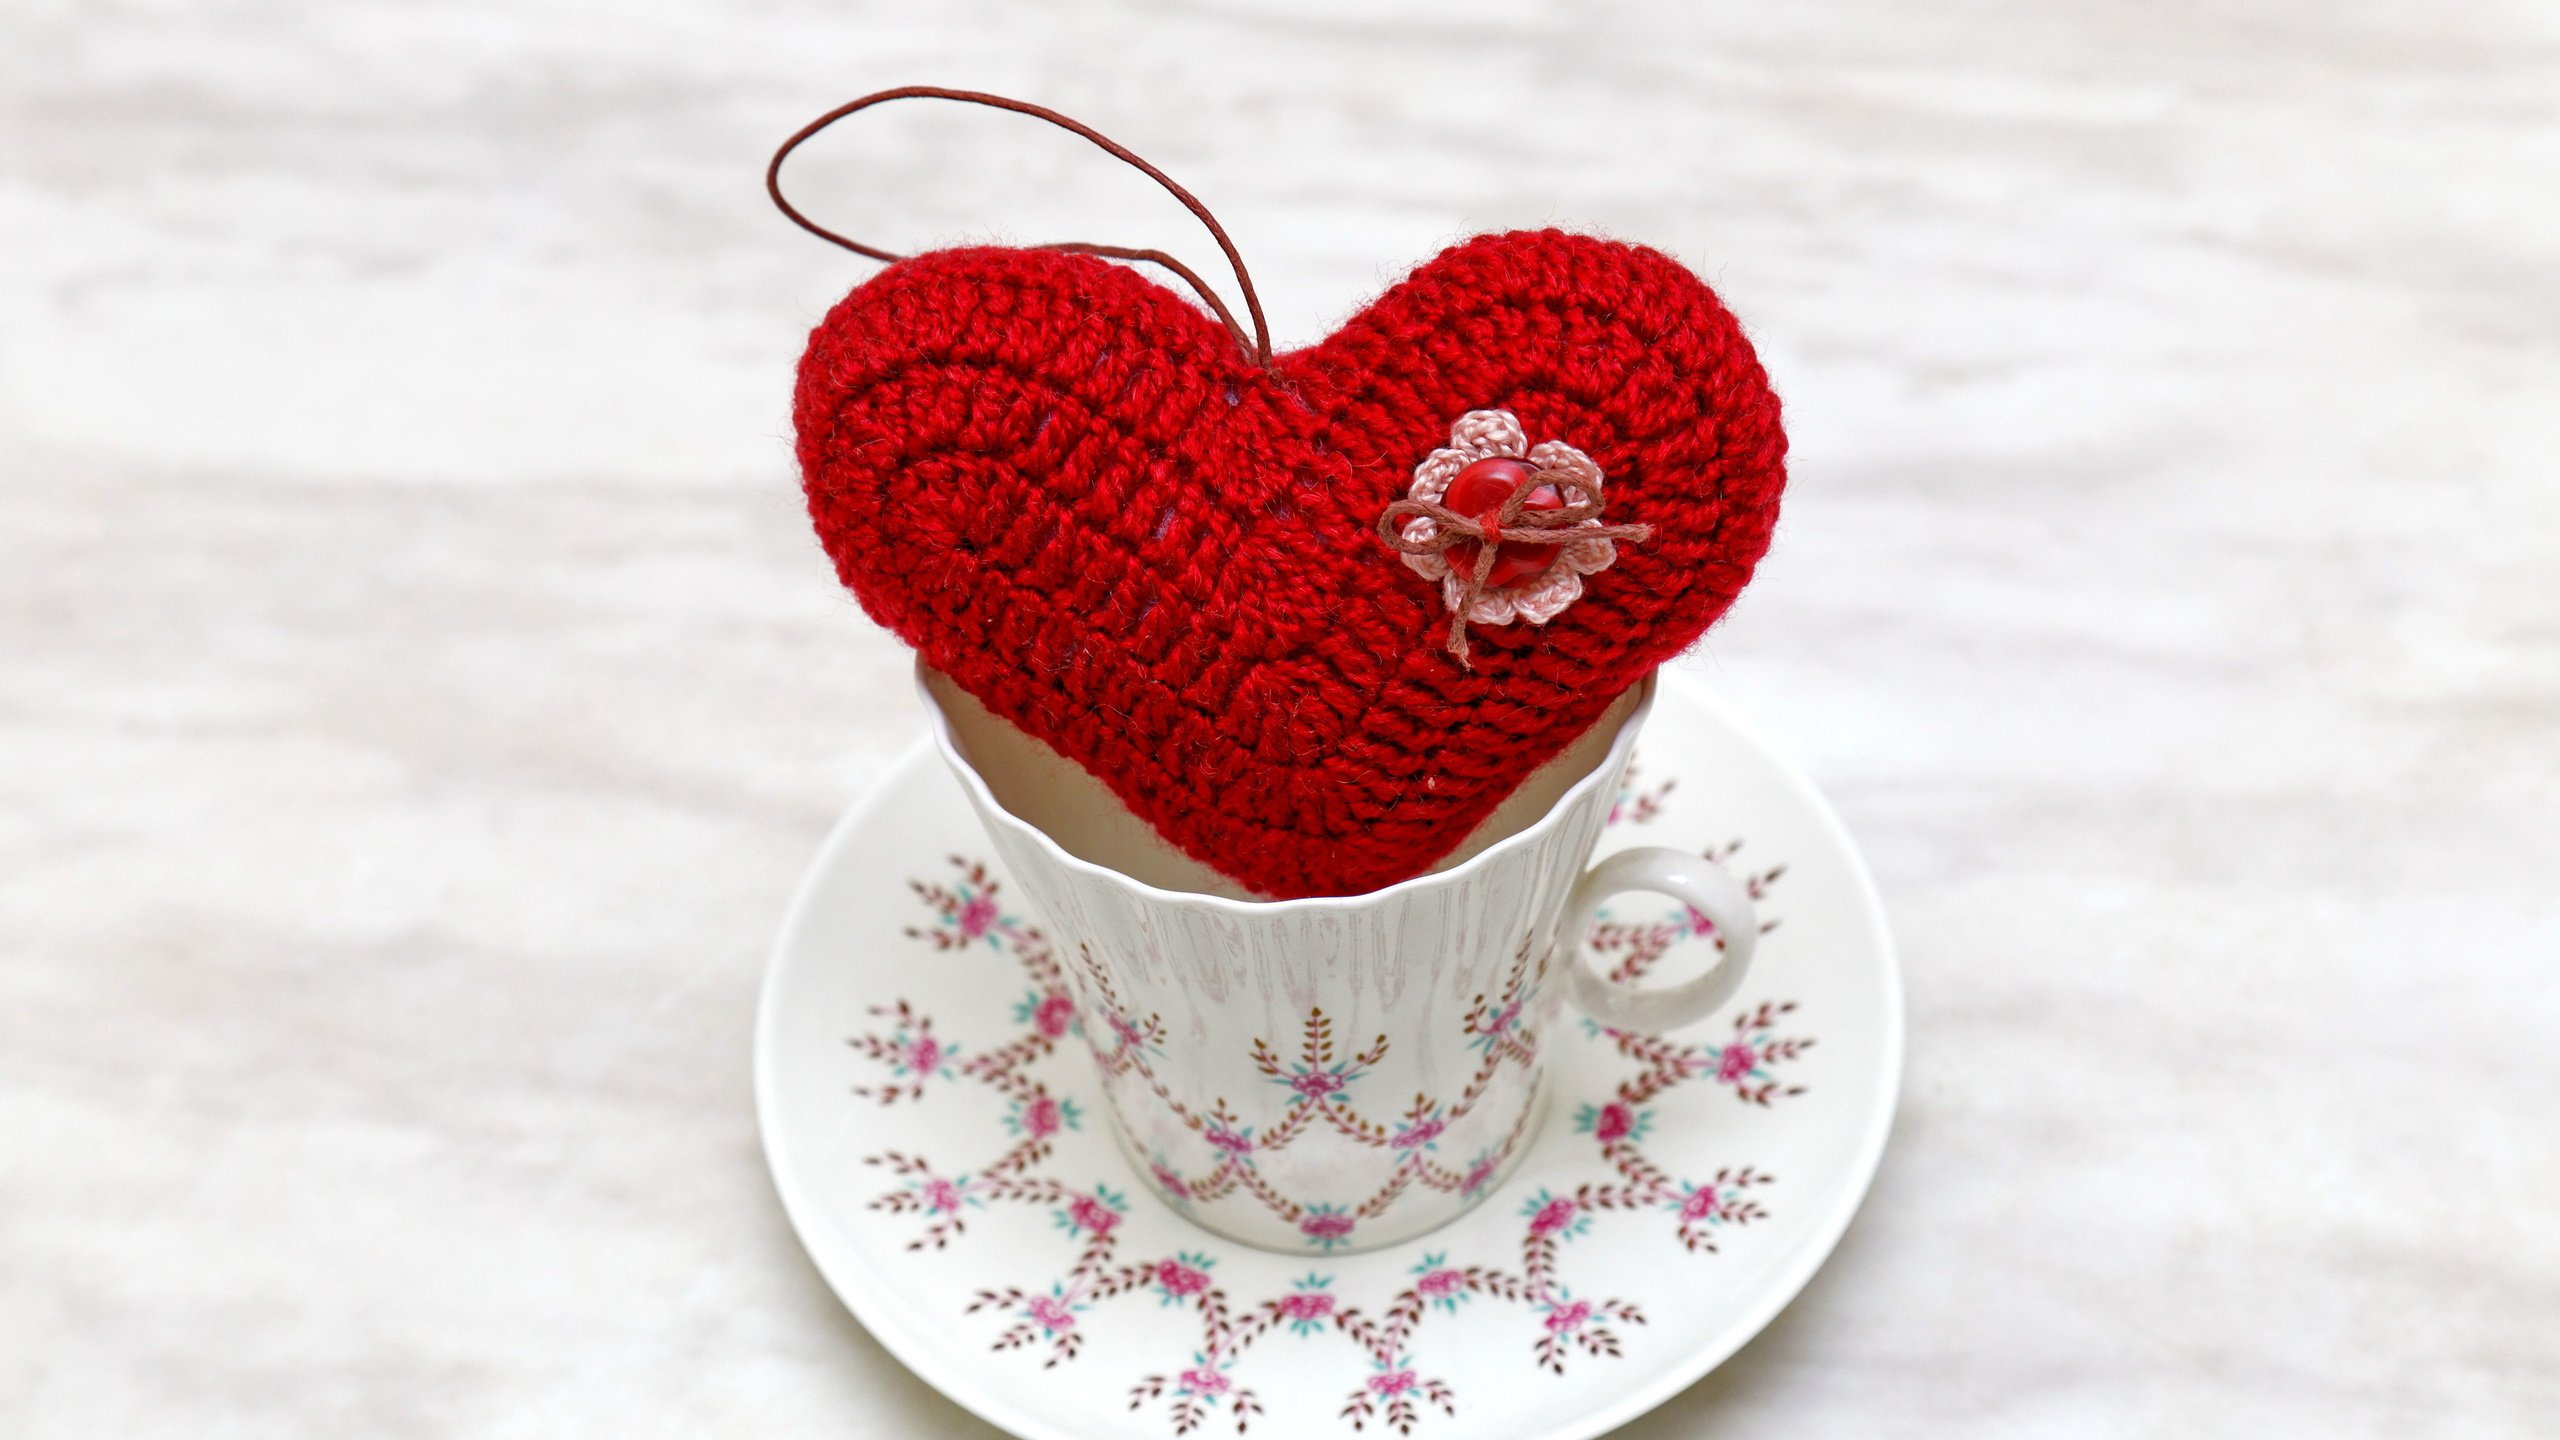 心脏, 一天, 甜头, 早上, 爱情 壁纸 2560x1440 允许